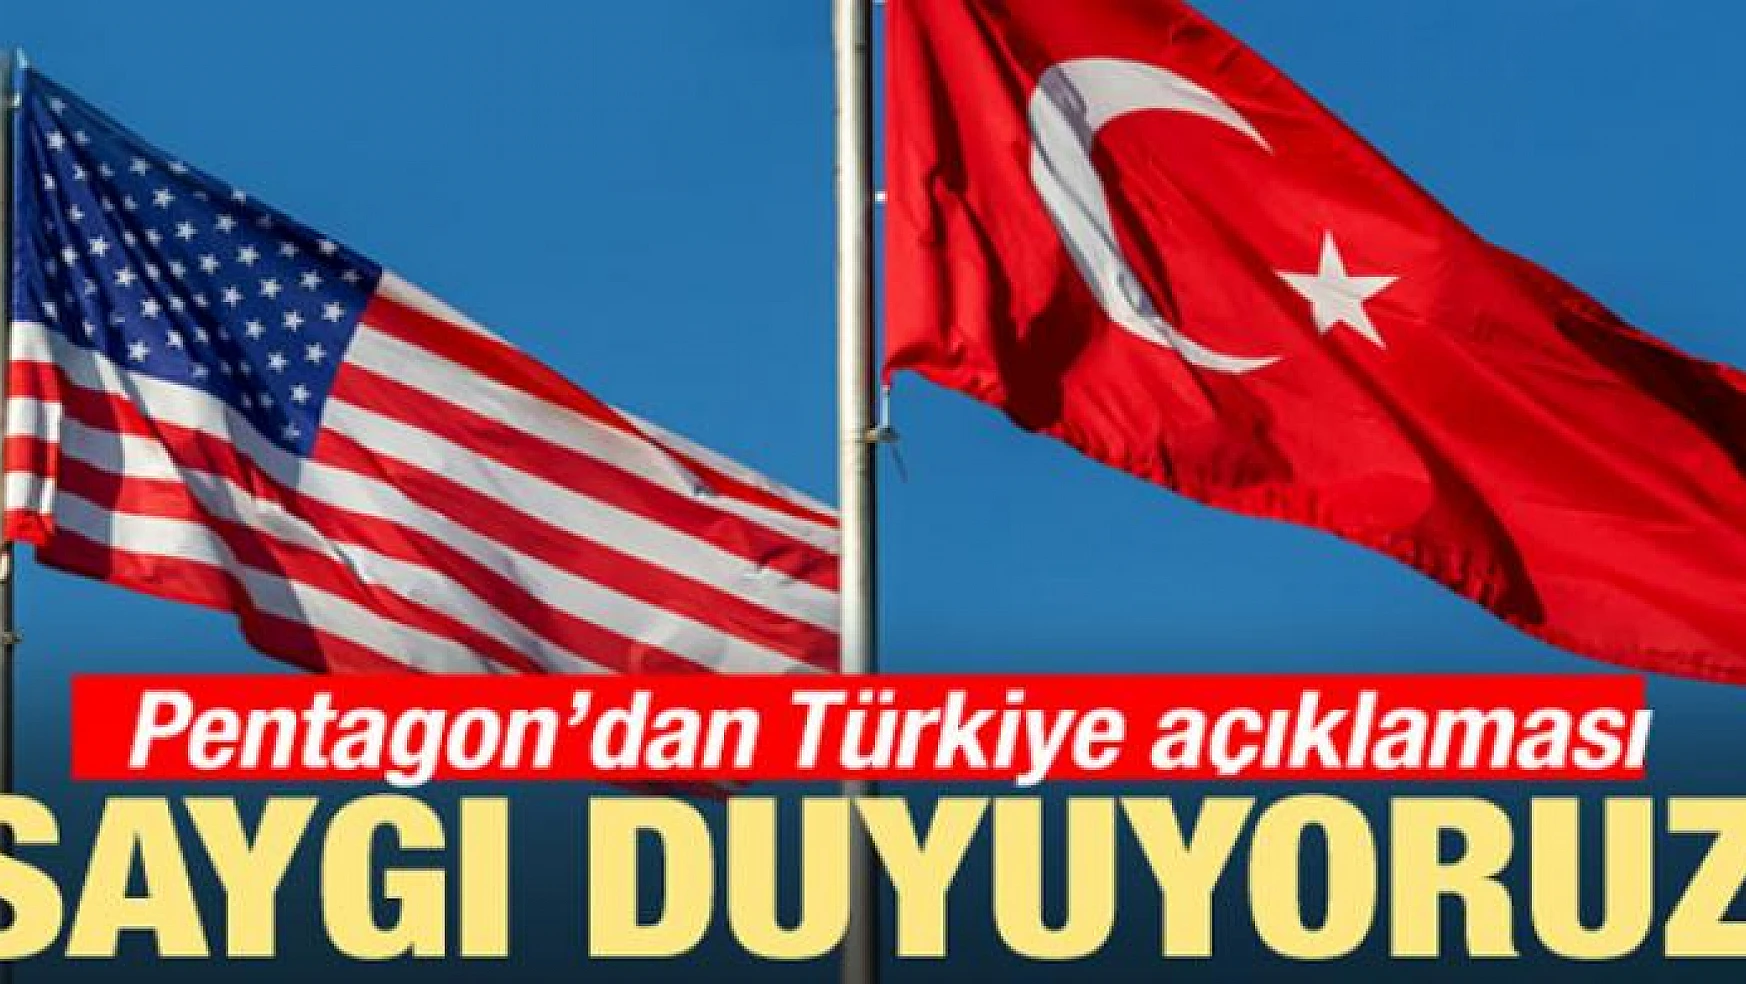 Pentagon'dan Türkiye açıklaması: Saygı duyuyoruz